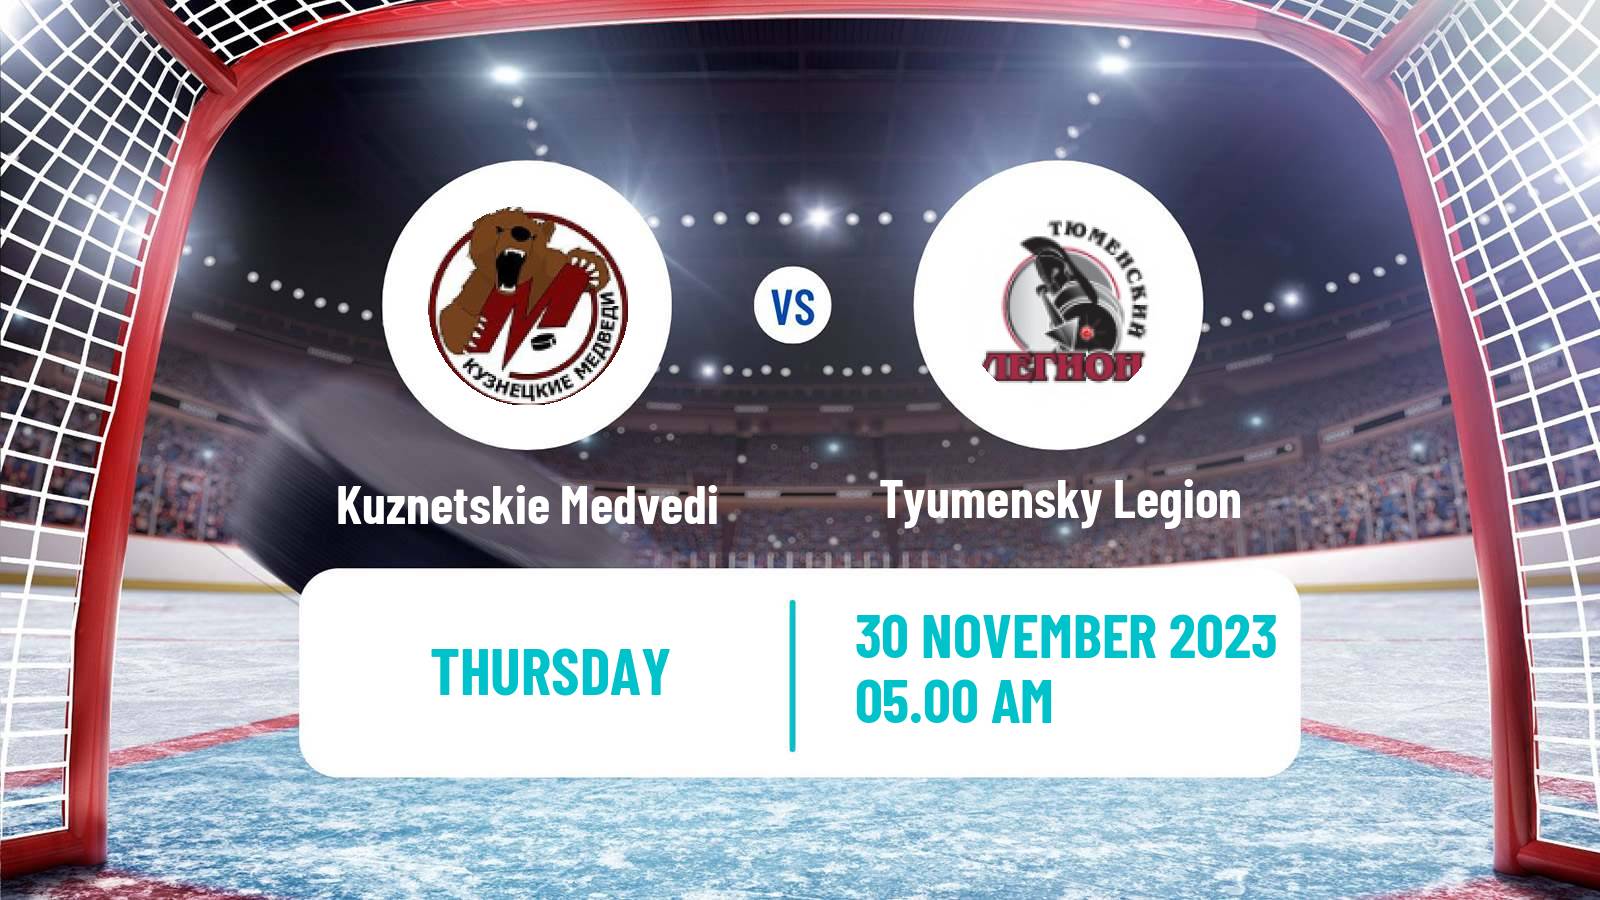 Hockey MHL Kuznetskie Medvedi - Tyumensky Legion